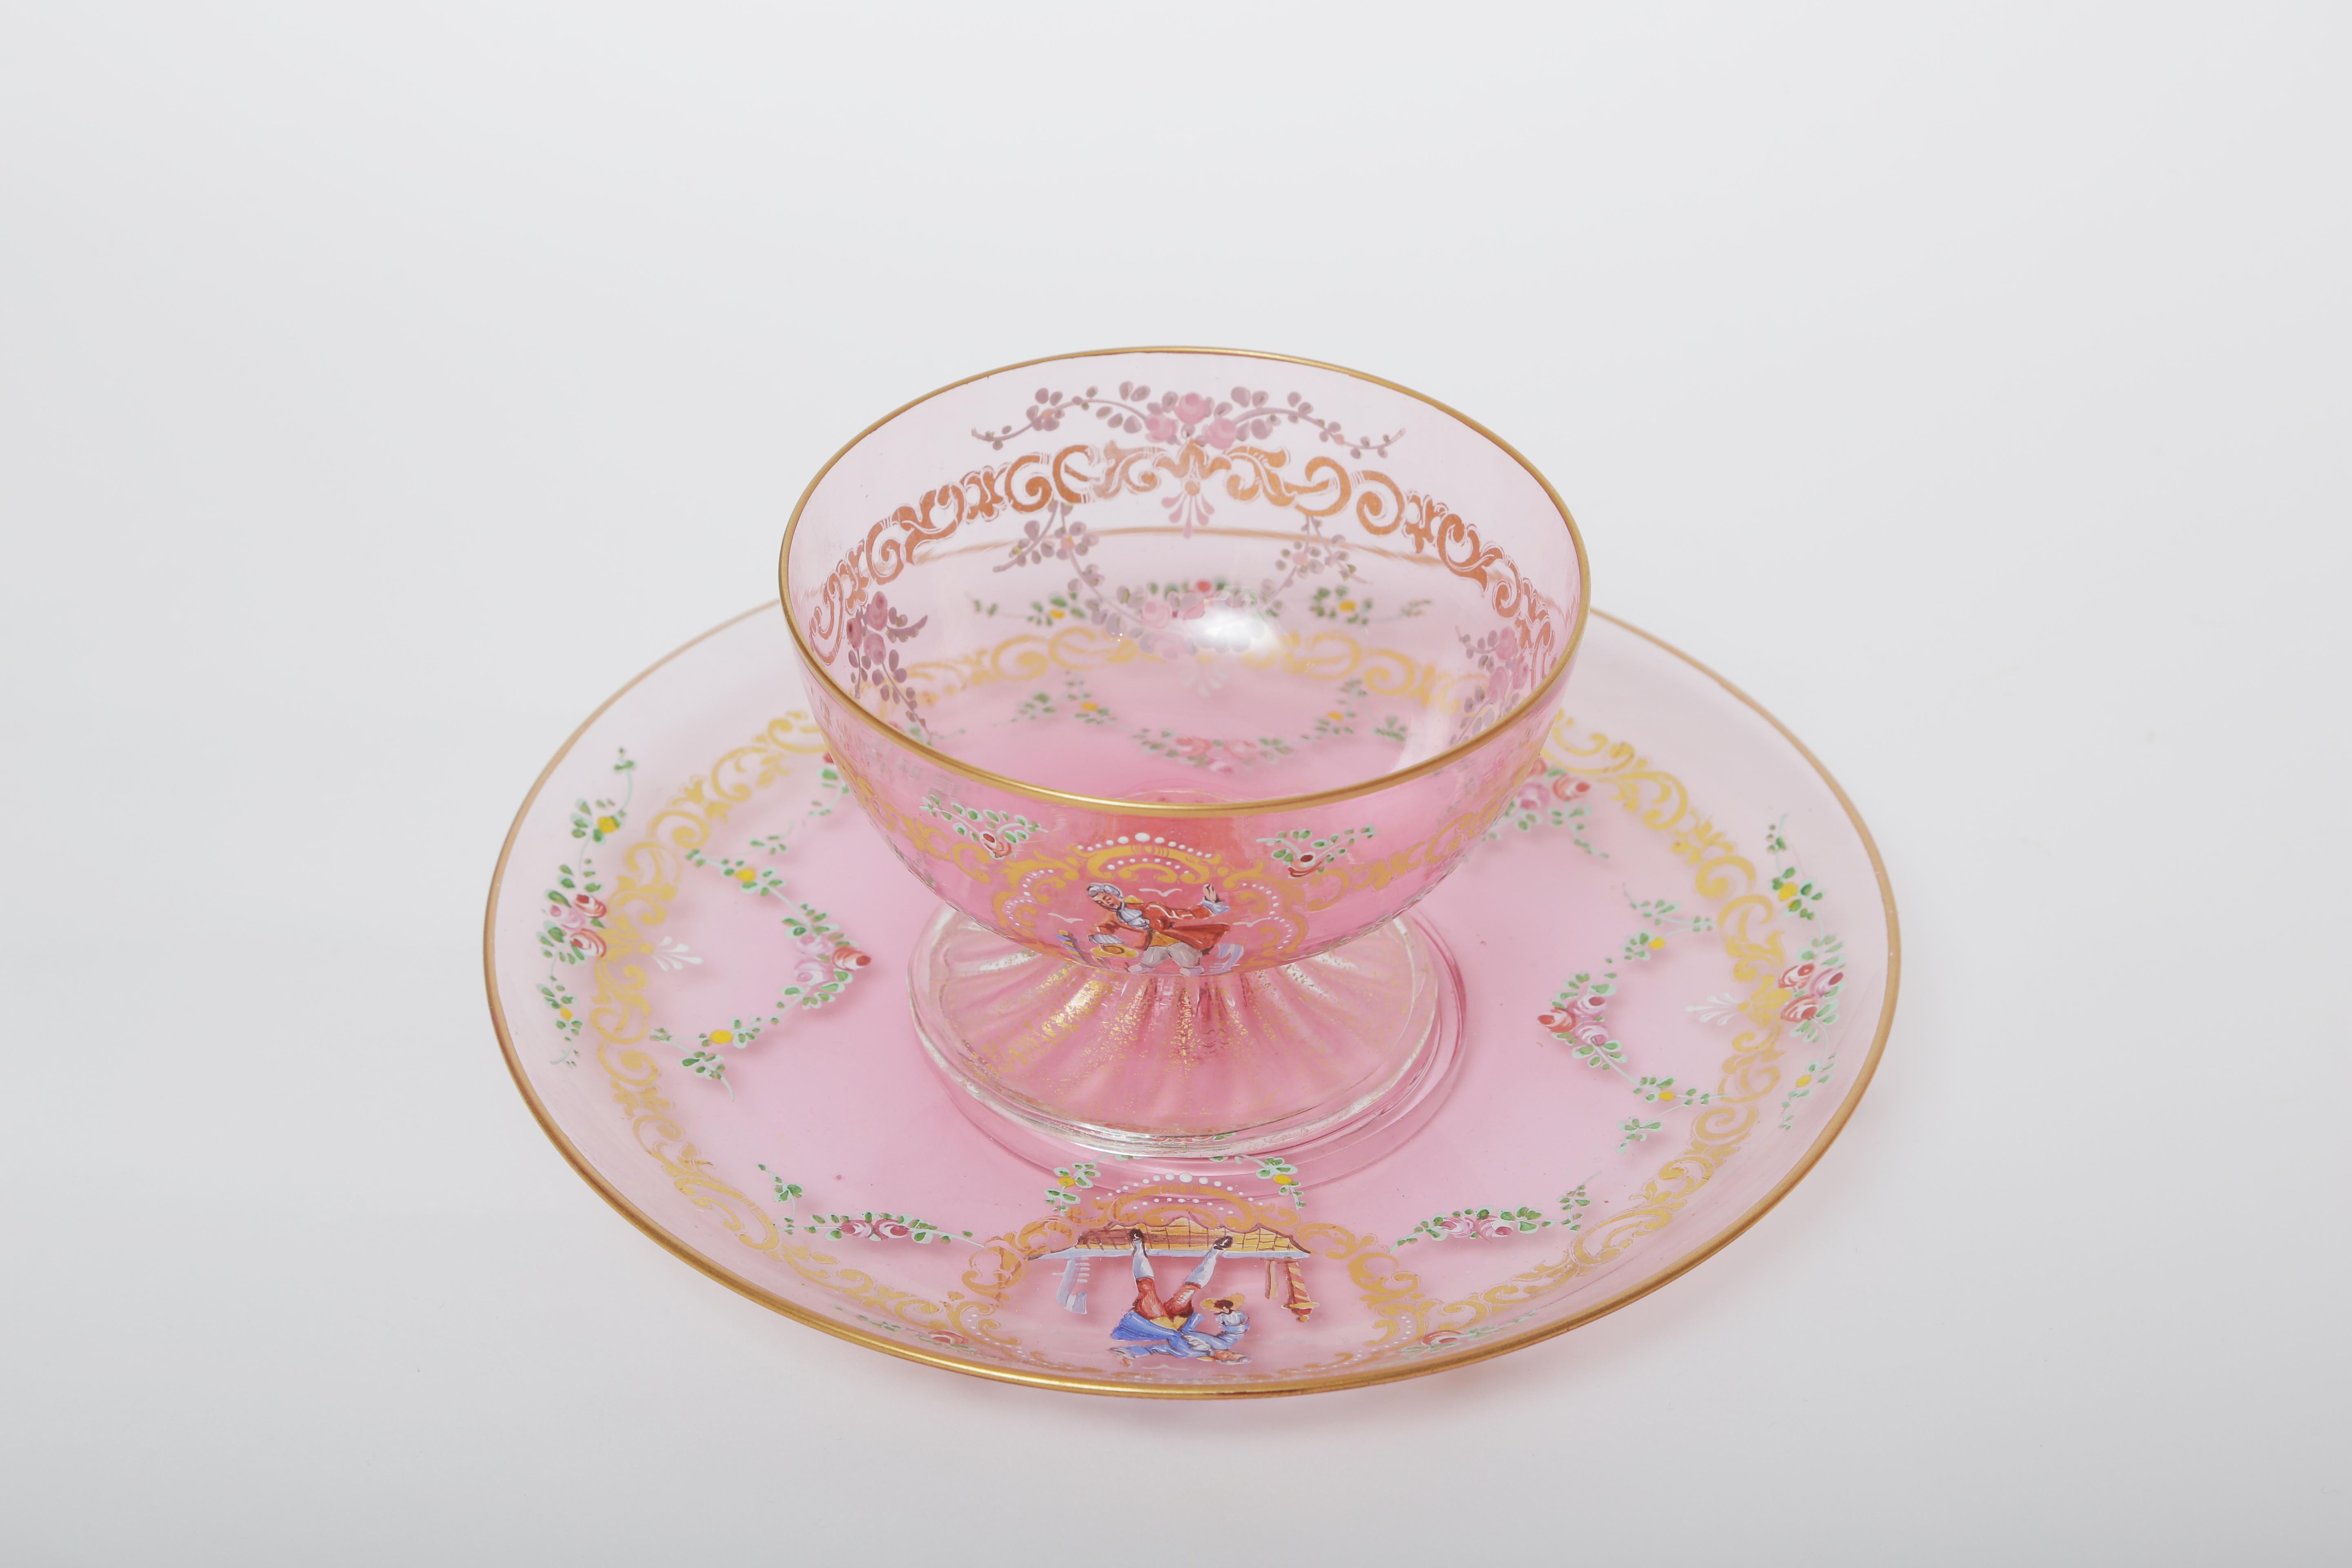 pink glass dessert plates